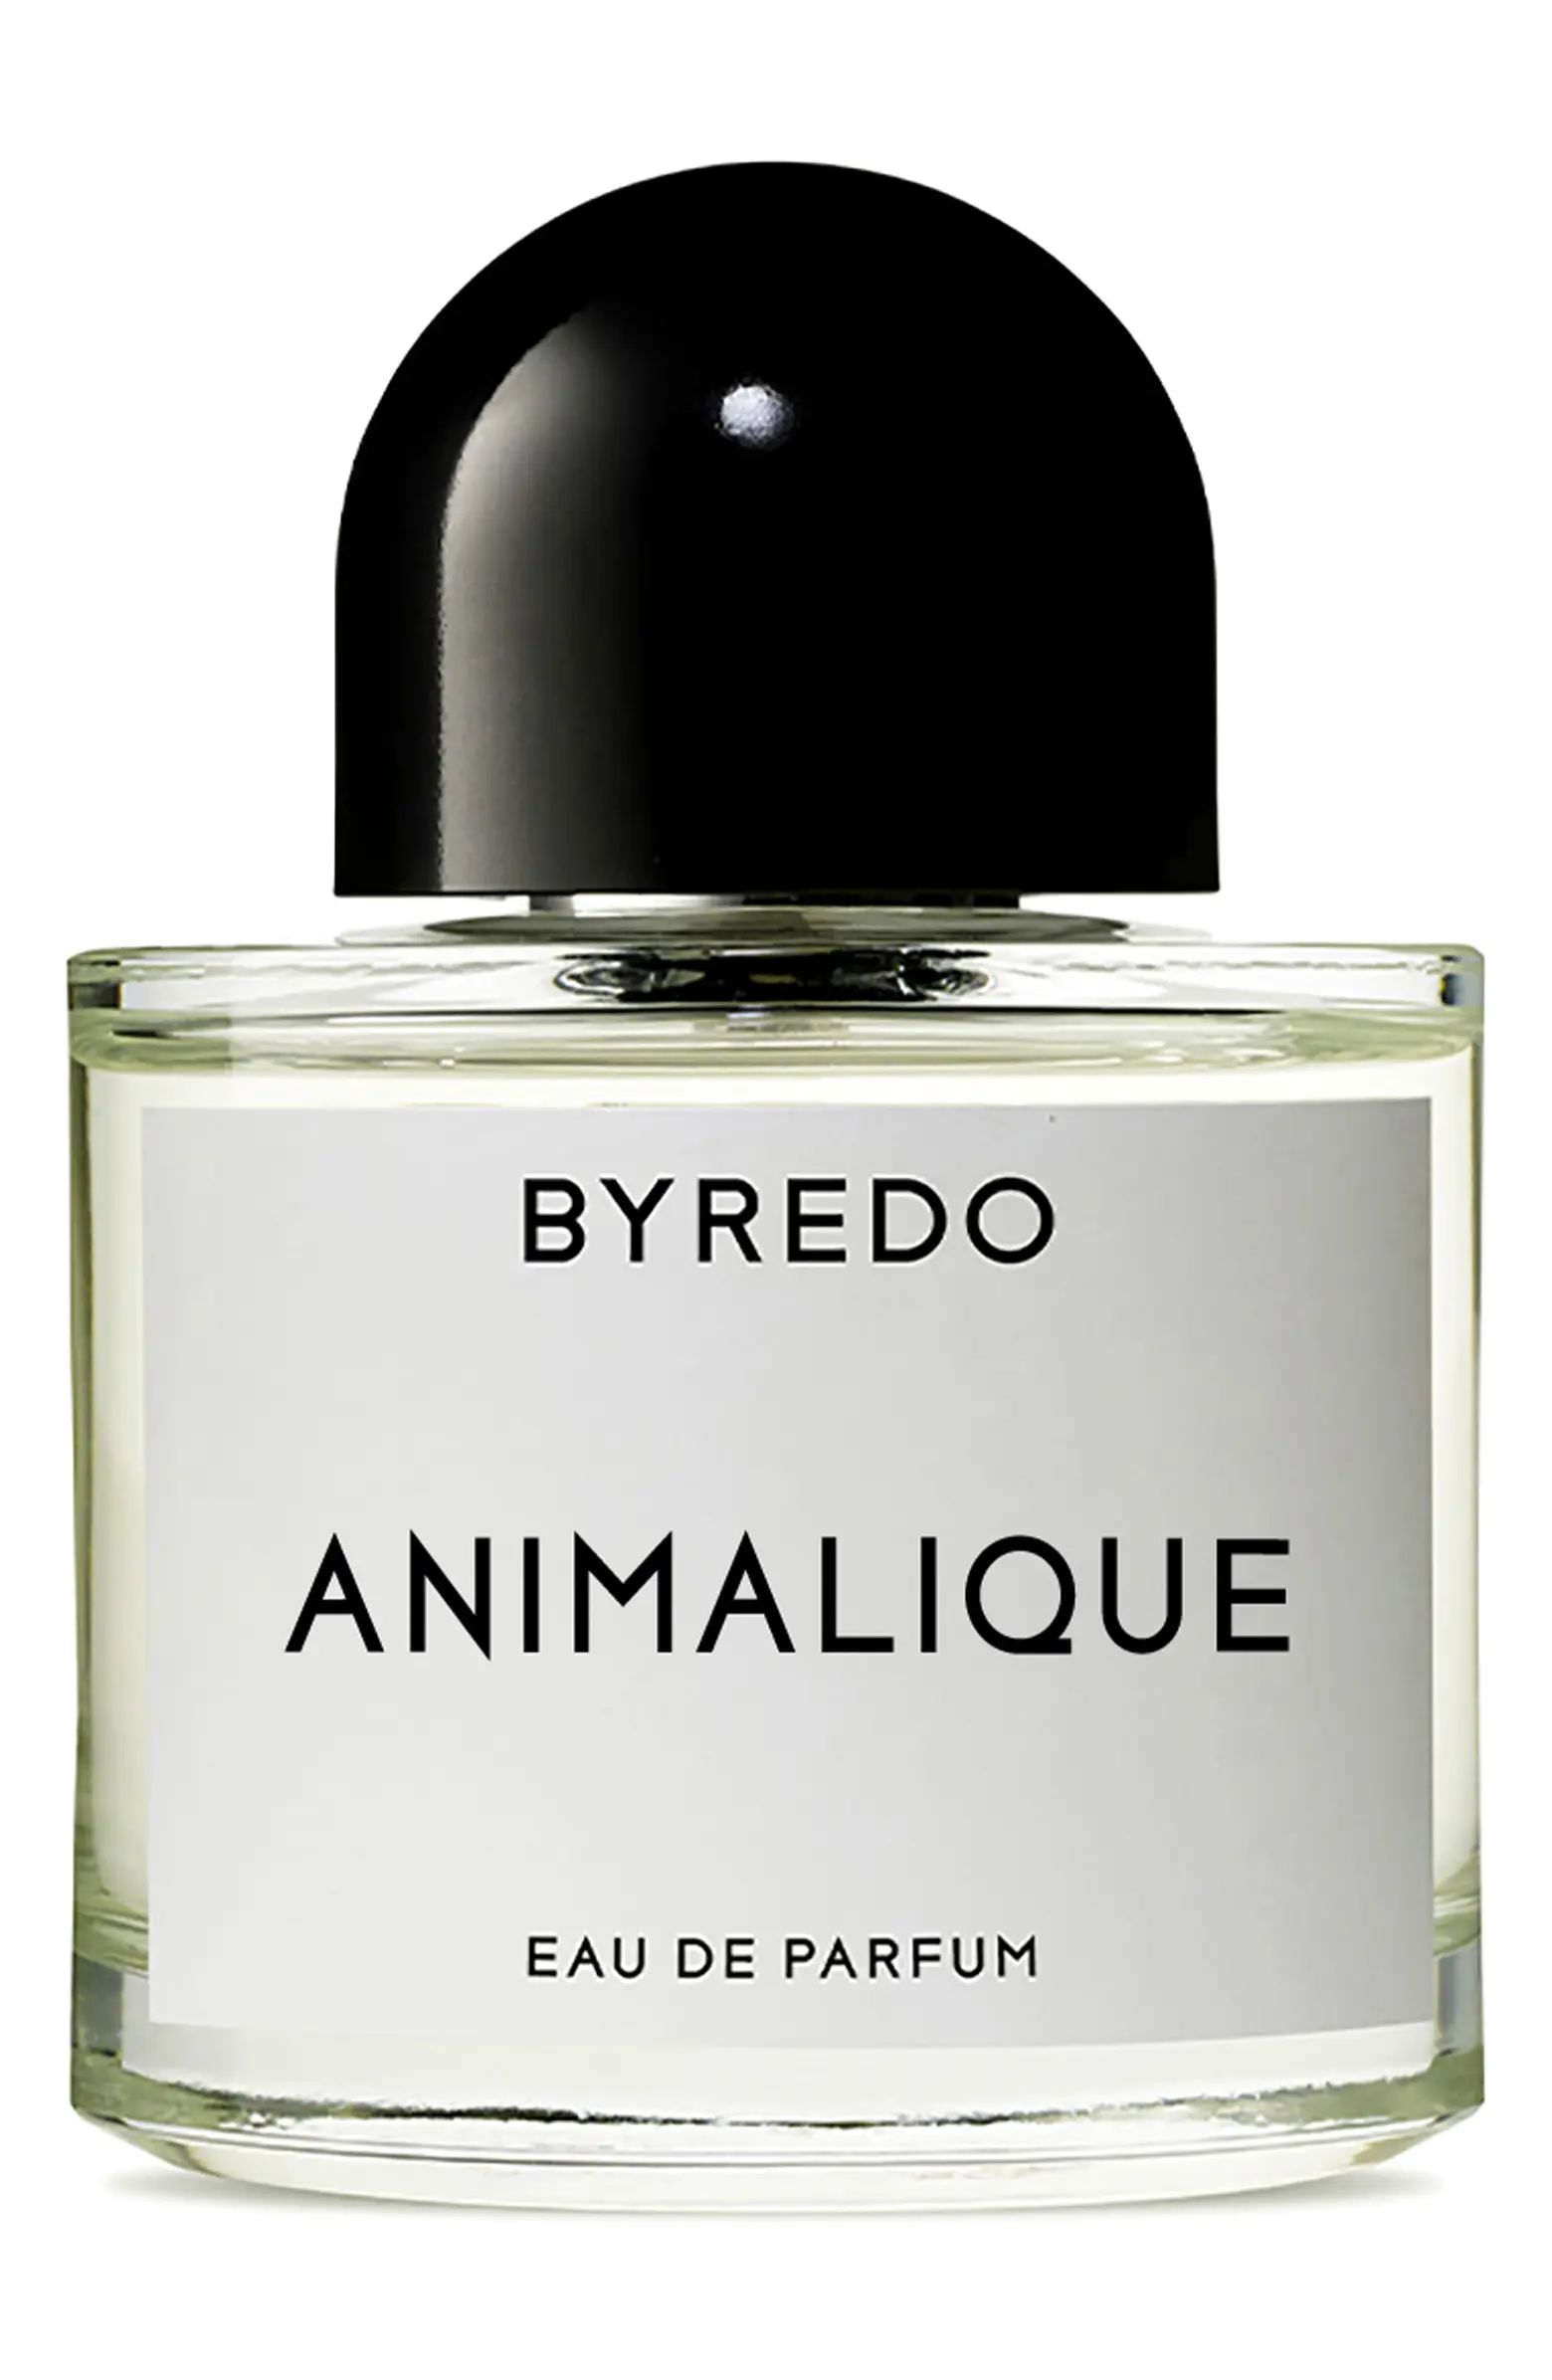 BYREDO Animalique Eau de Parfum | Nordstrom | Nordstrom